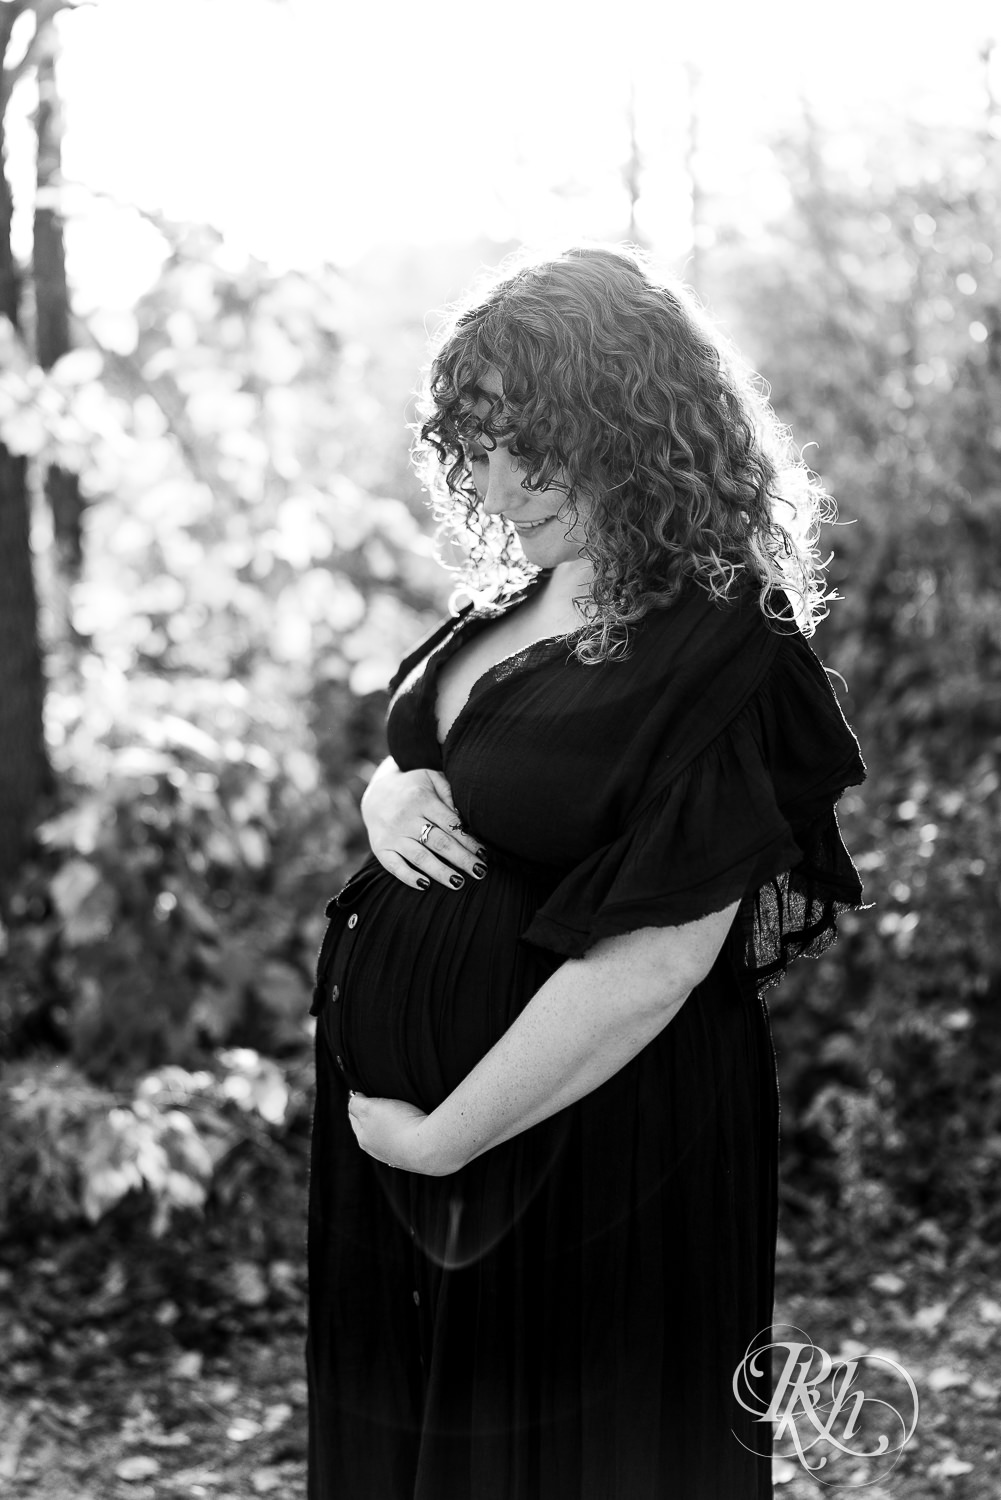 Pregnant woman in black dress in hat holds belly in field in Lebanon Hills Regional Park in Eagan, Minnesota.